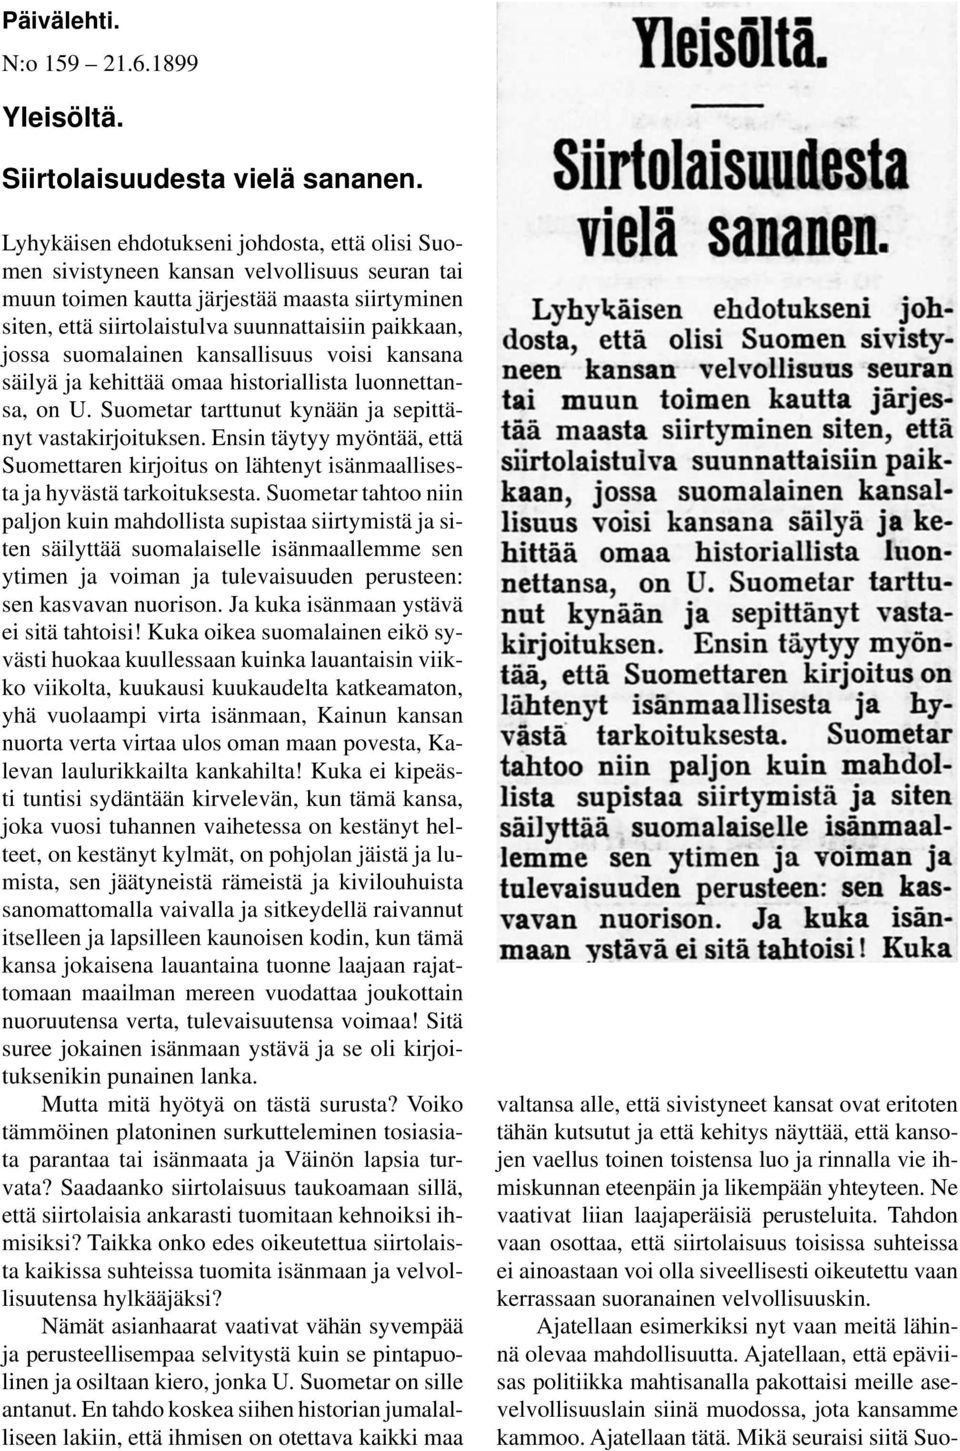 jossa suomalainen kansallisuus voisi kansana säilyä ja kehittää omaa historiallista luonnettansa, on U. Suometar tarttunut kynään ja sepittänyt vastakirjoituksen.